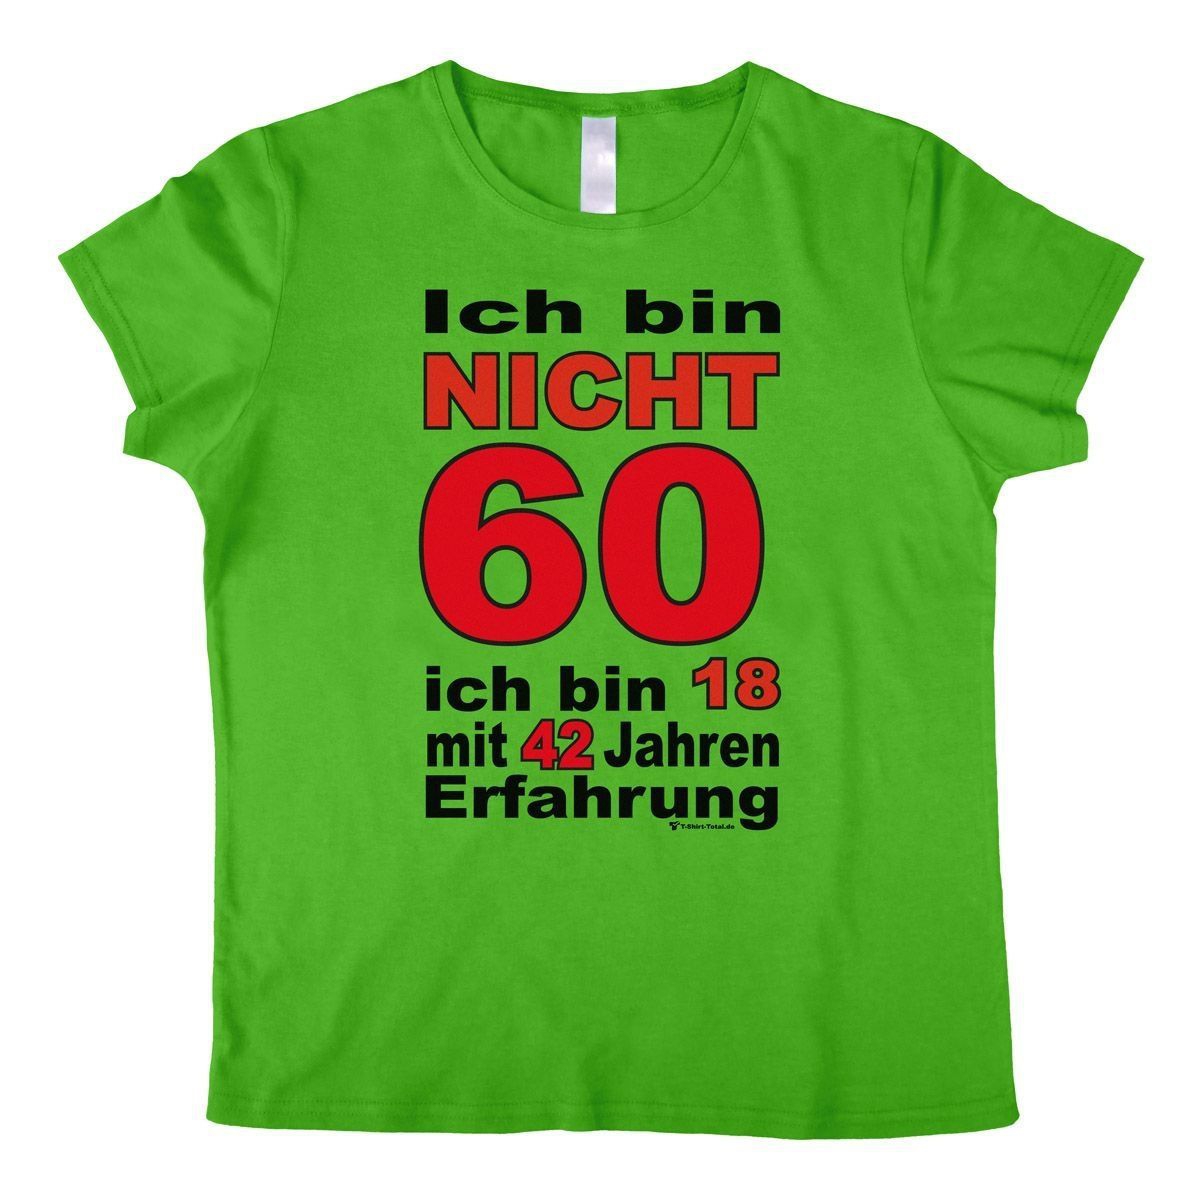 Bin nicht 60 Woman T-Shirt grün Small